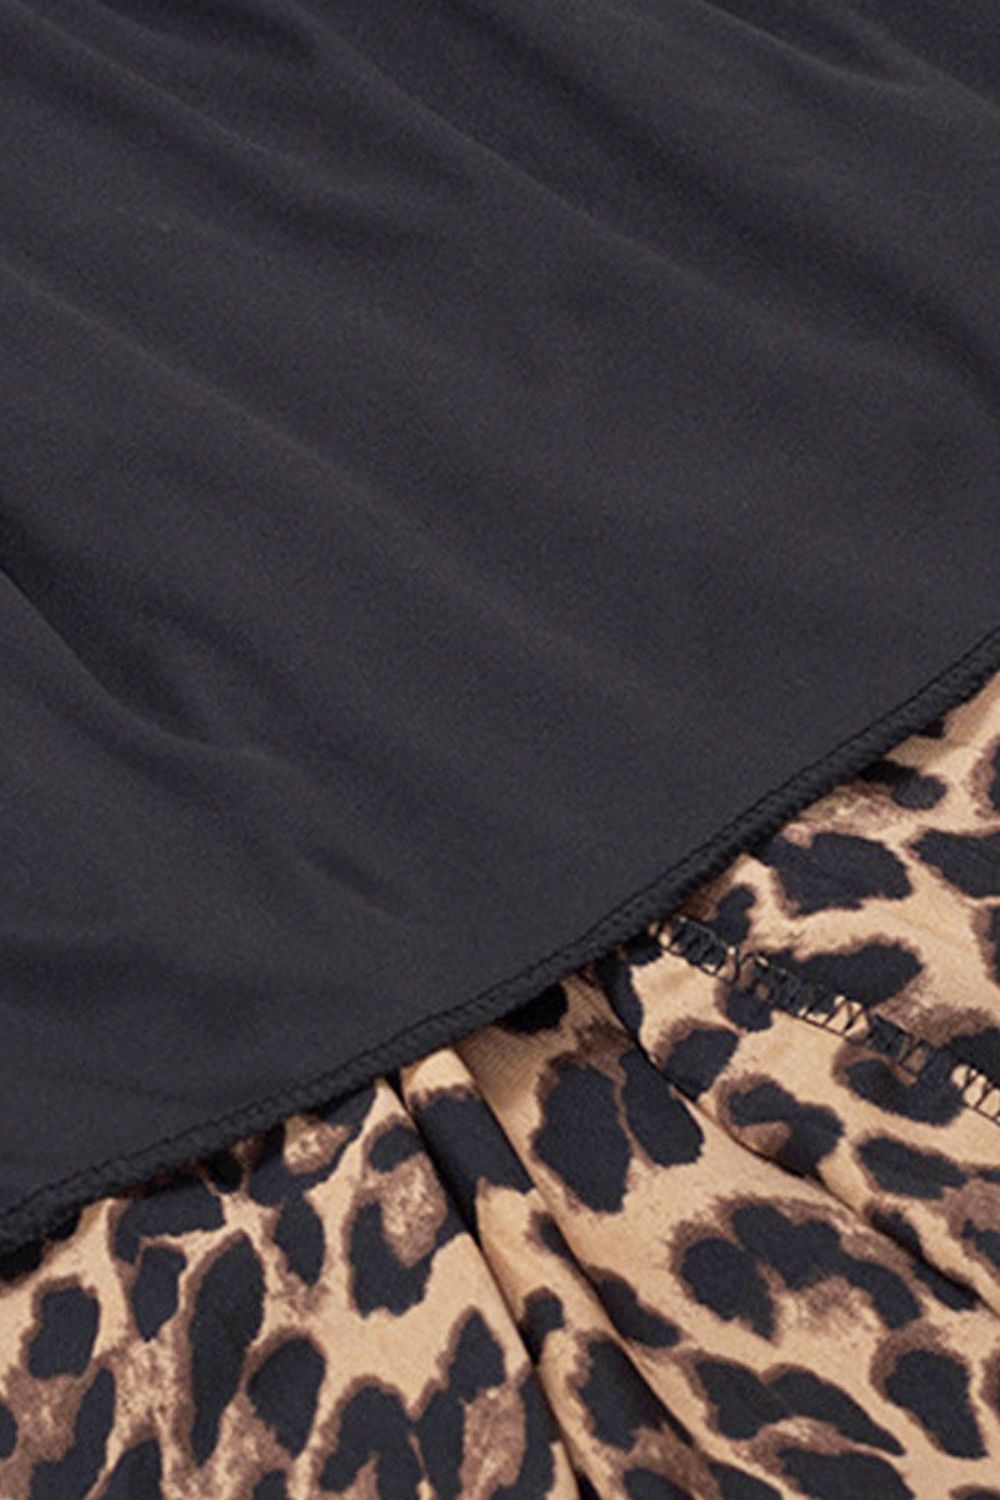 Elegant Chic Leopard Midi Skirt (L - 5X)